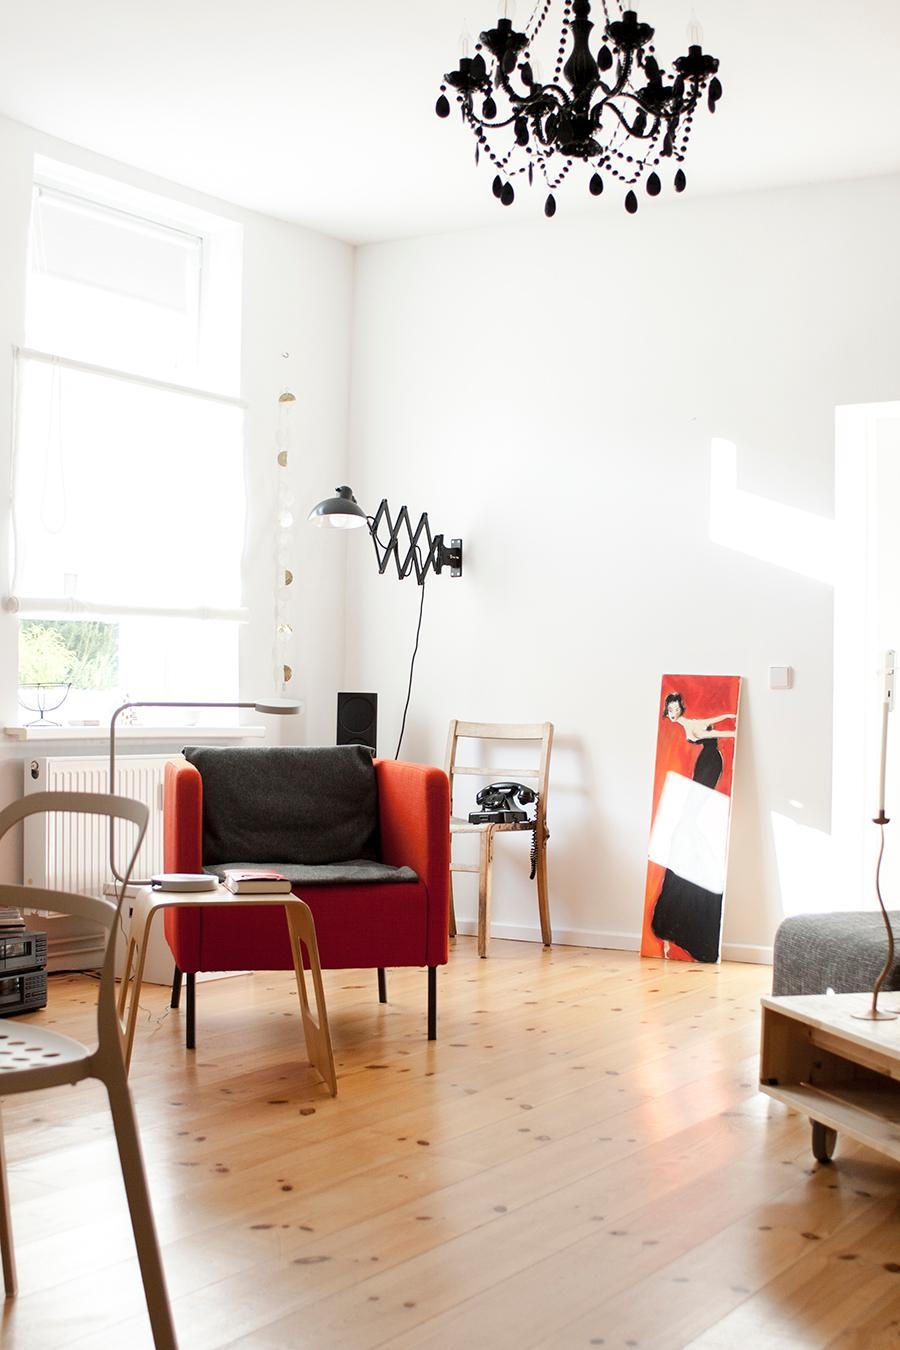 Unser Wohnzimmer im Sonnenschein.
 #neuhier #wohnzimmer #vintage #kronleuchter #midcentury #kaiseridell #altbau